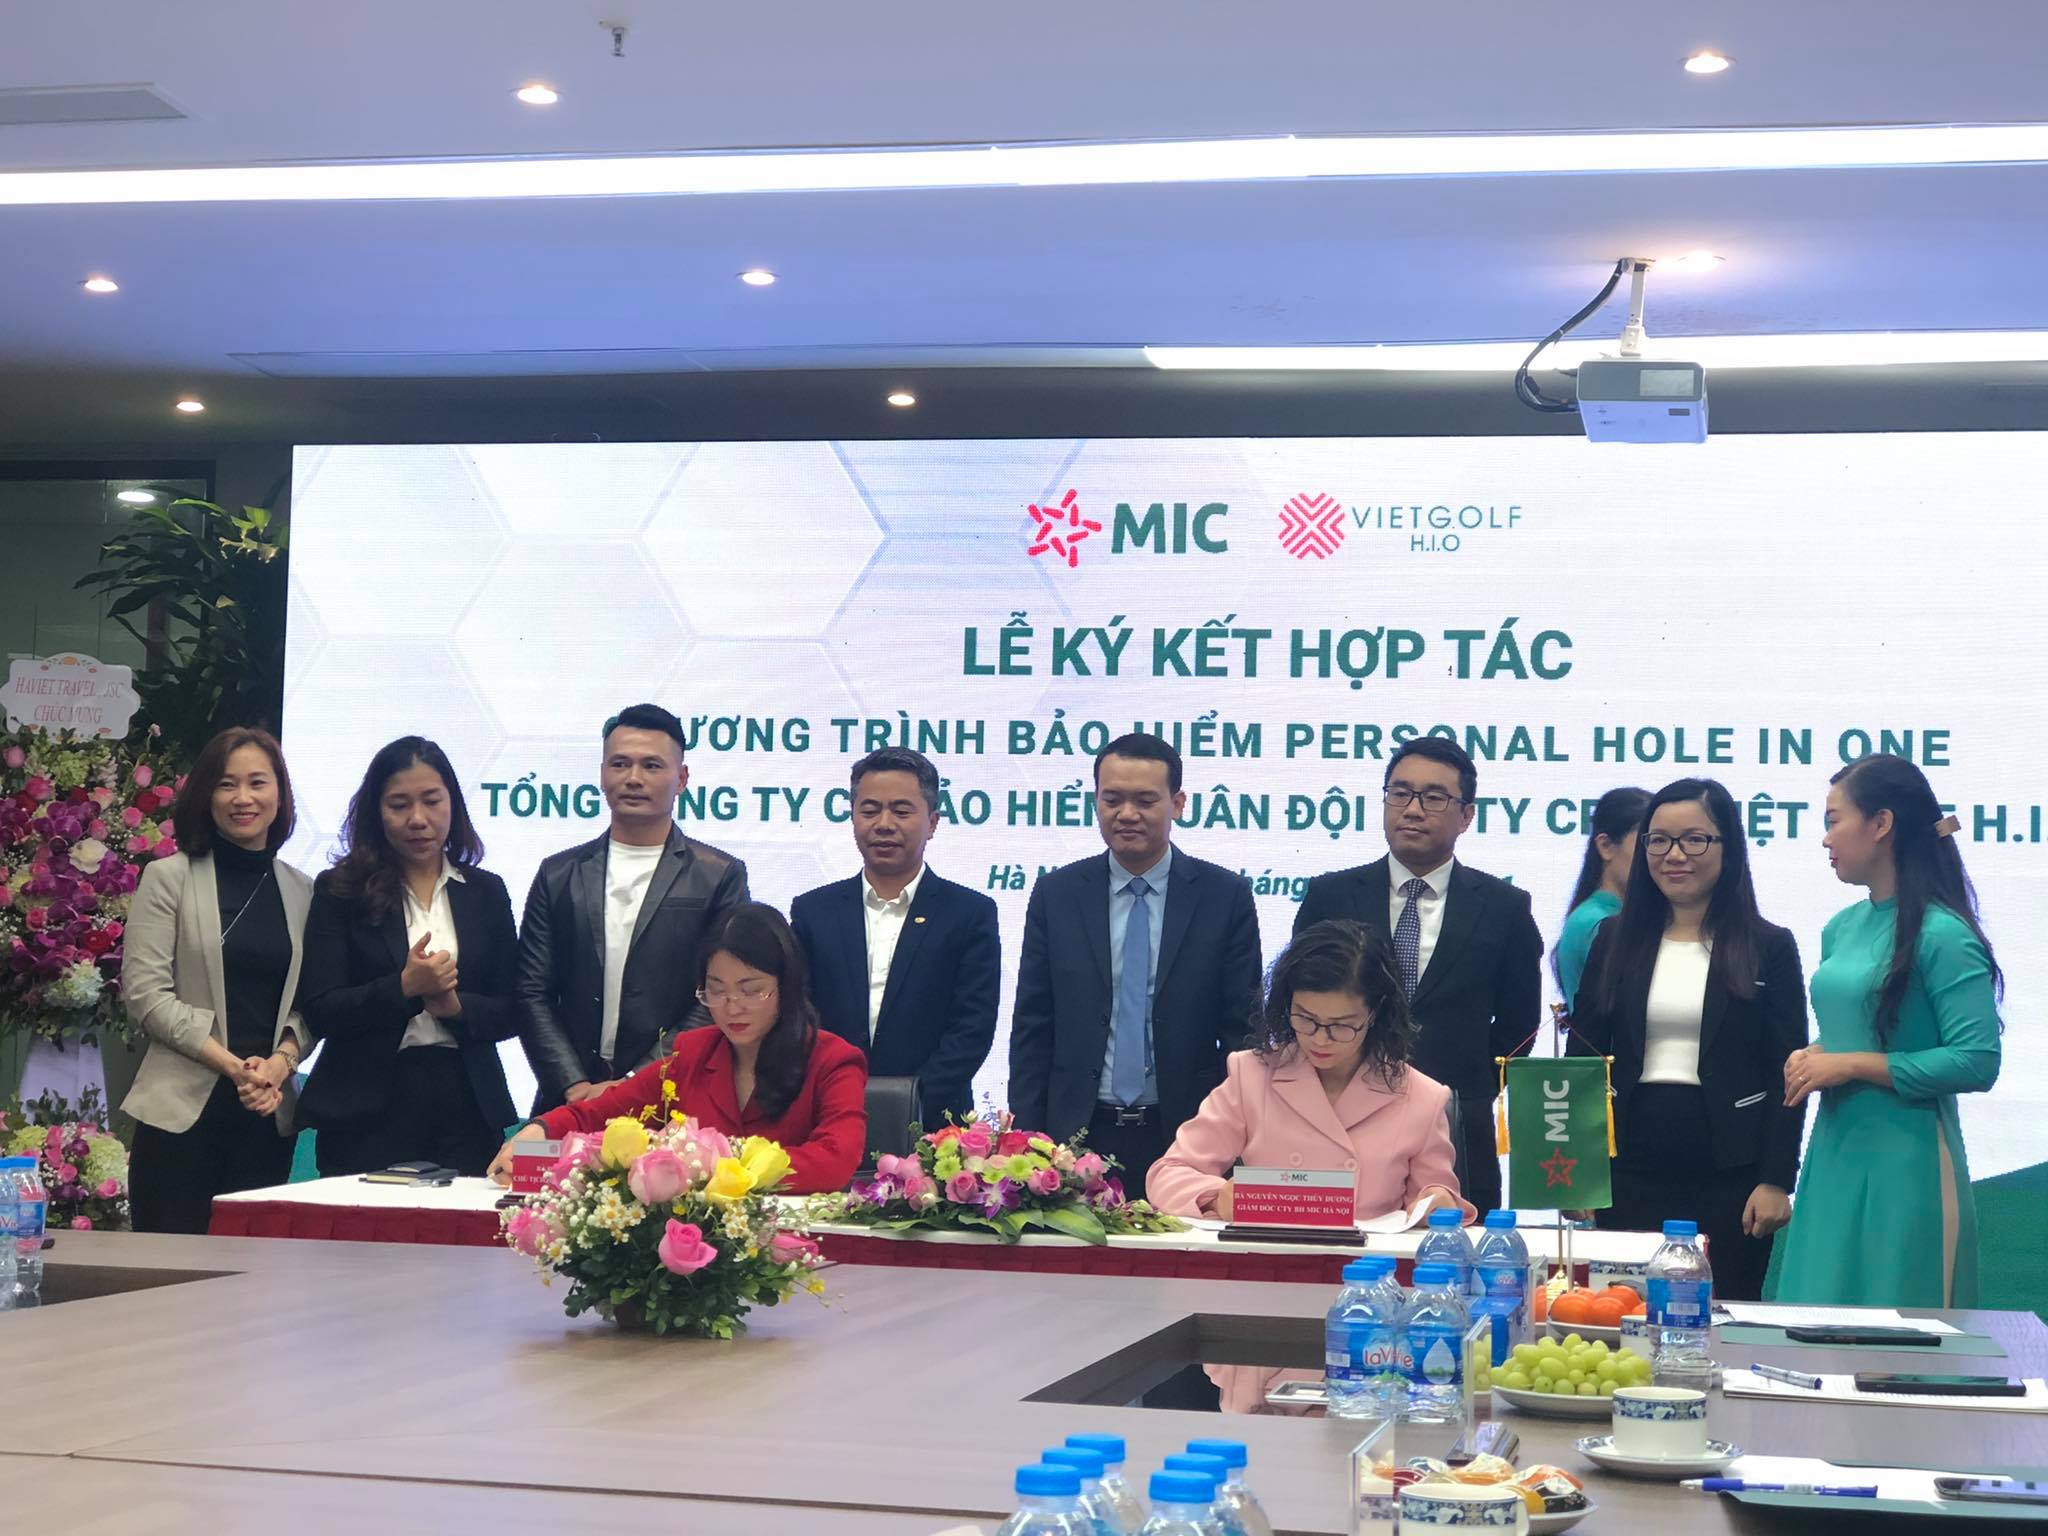  Hà Việt Golf và MIC hợp tác ra mắt Bảo hiểm Personal Hole-in-One cho người chơi golf